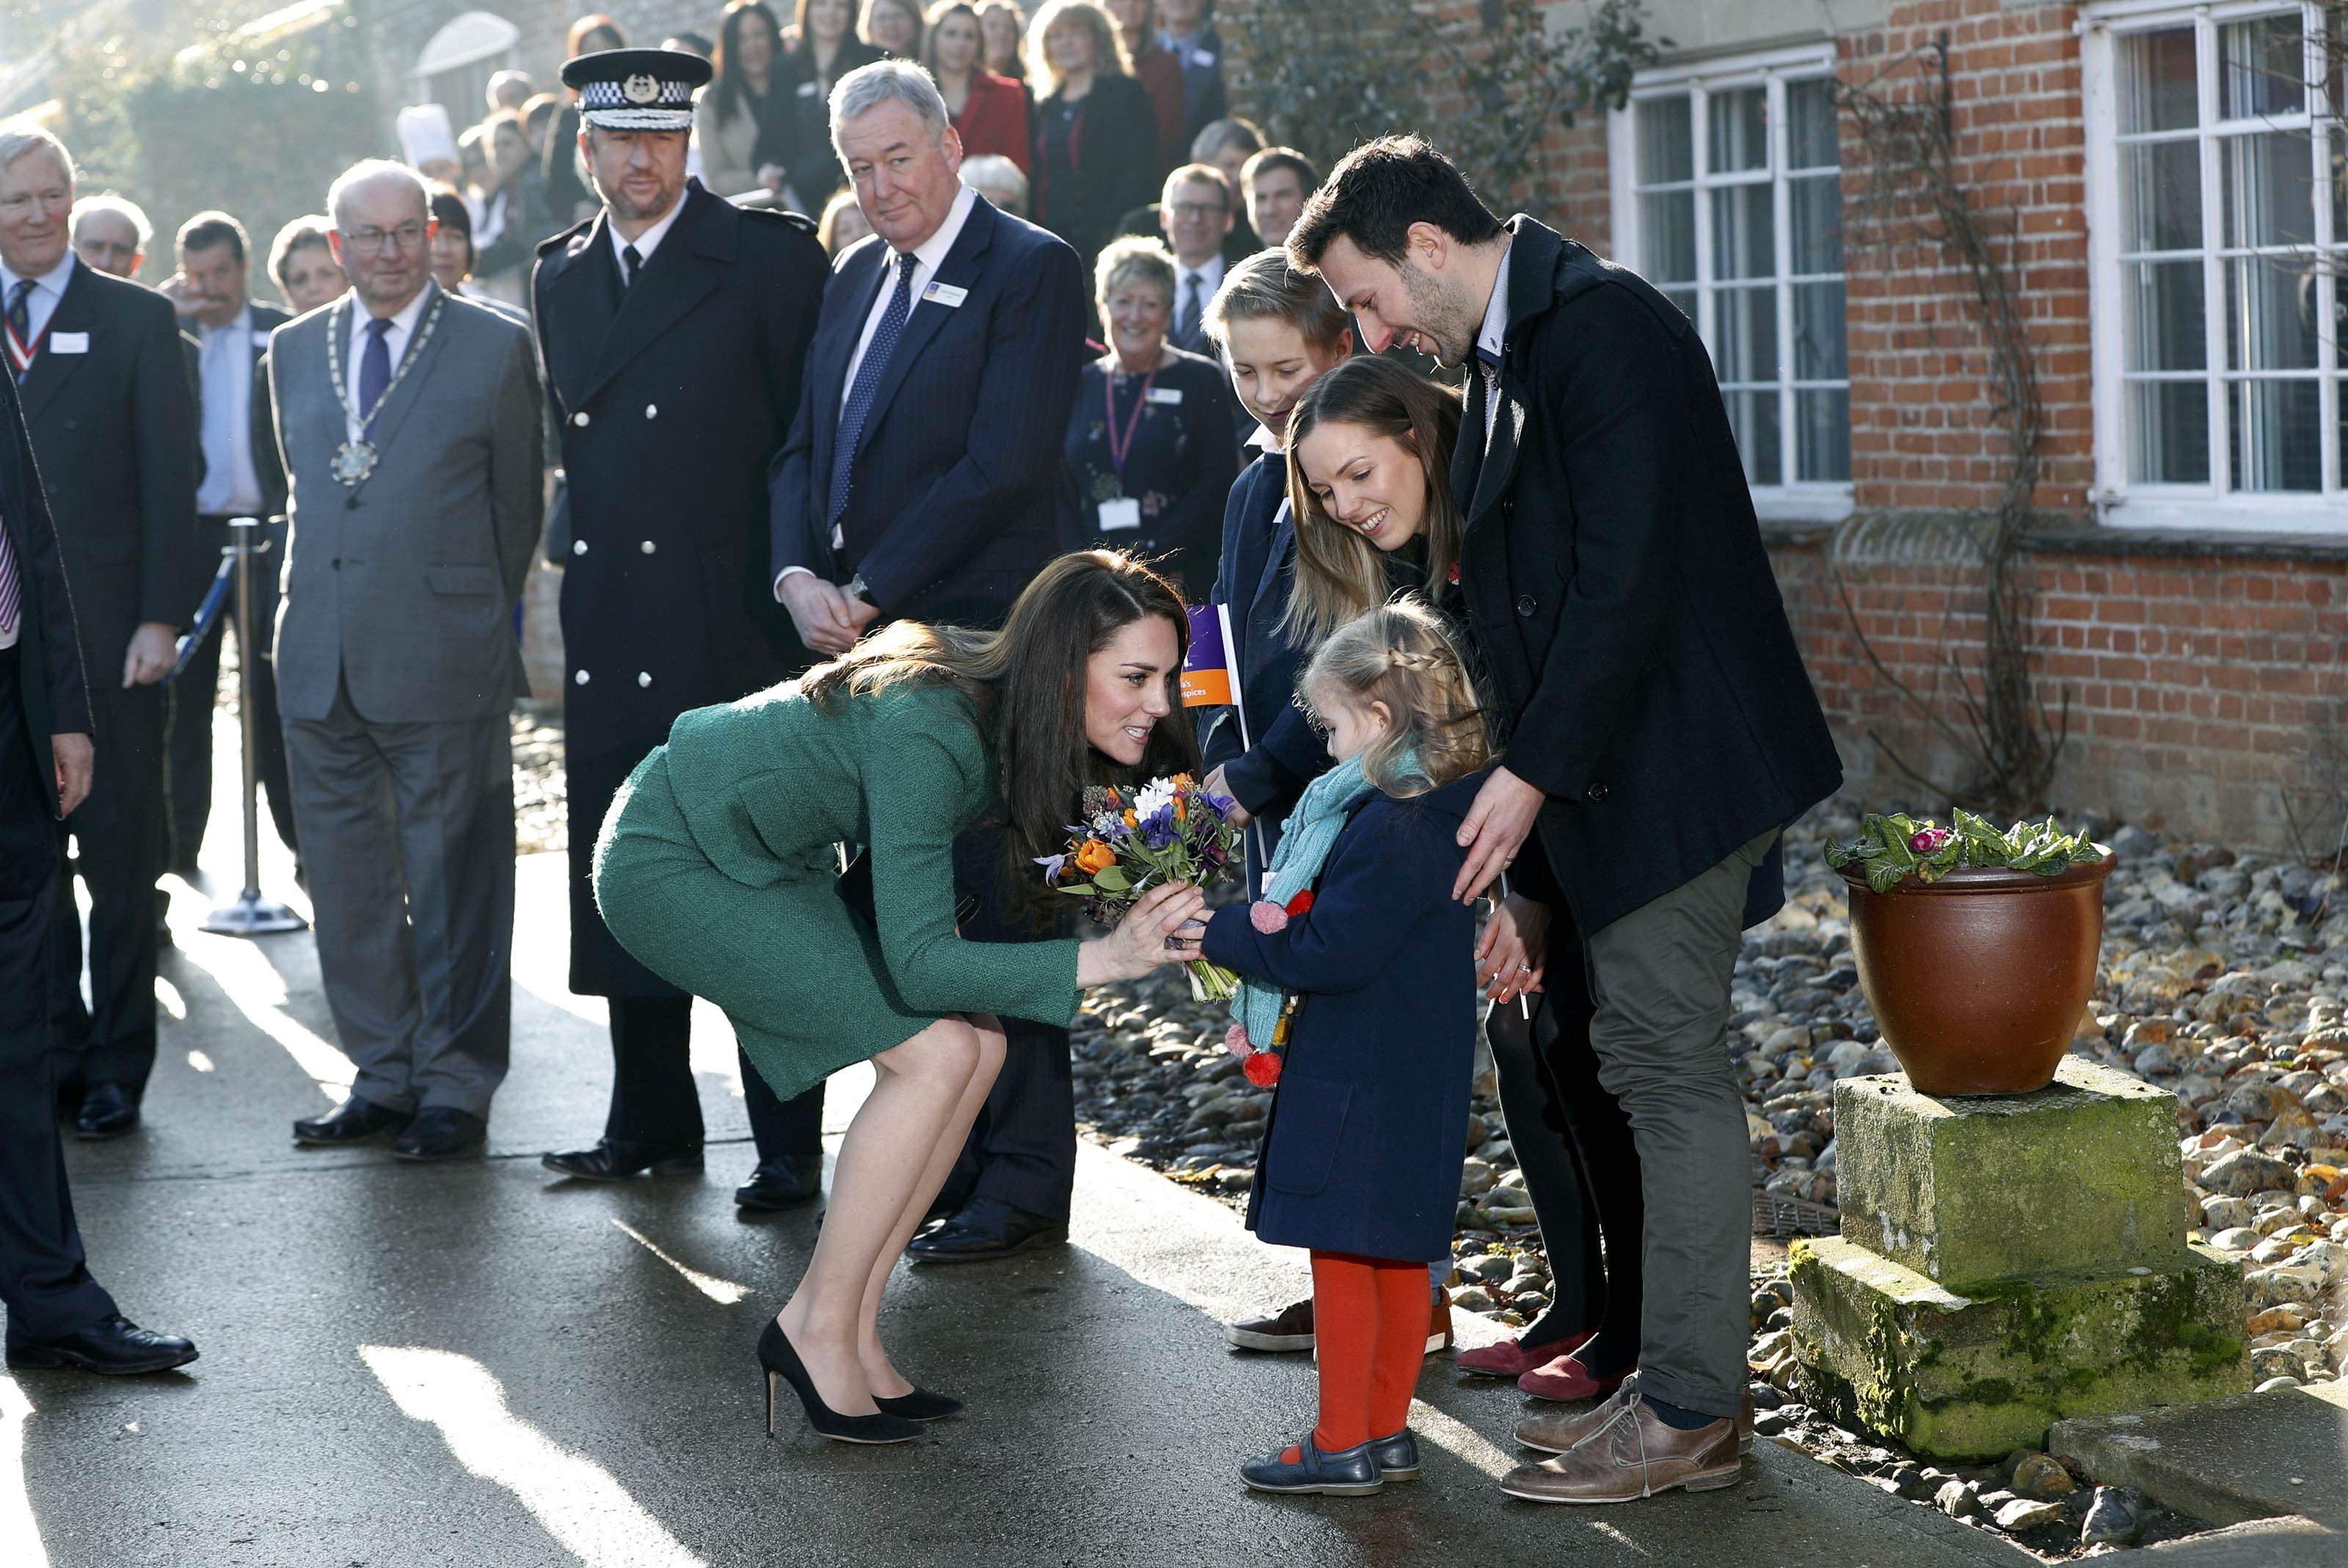 زوجة الأمير البريطانى تزور دور رعاية للأطفال بقرية شرق إنجلترا